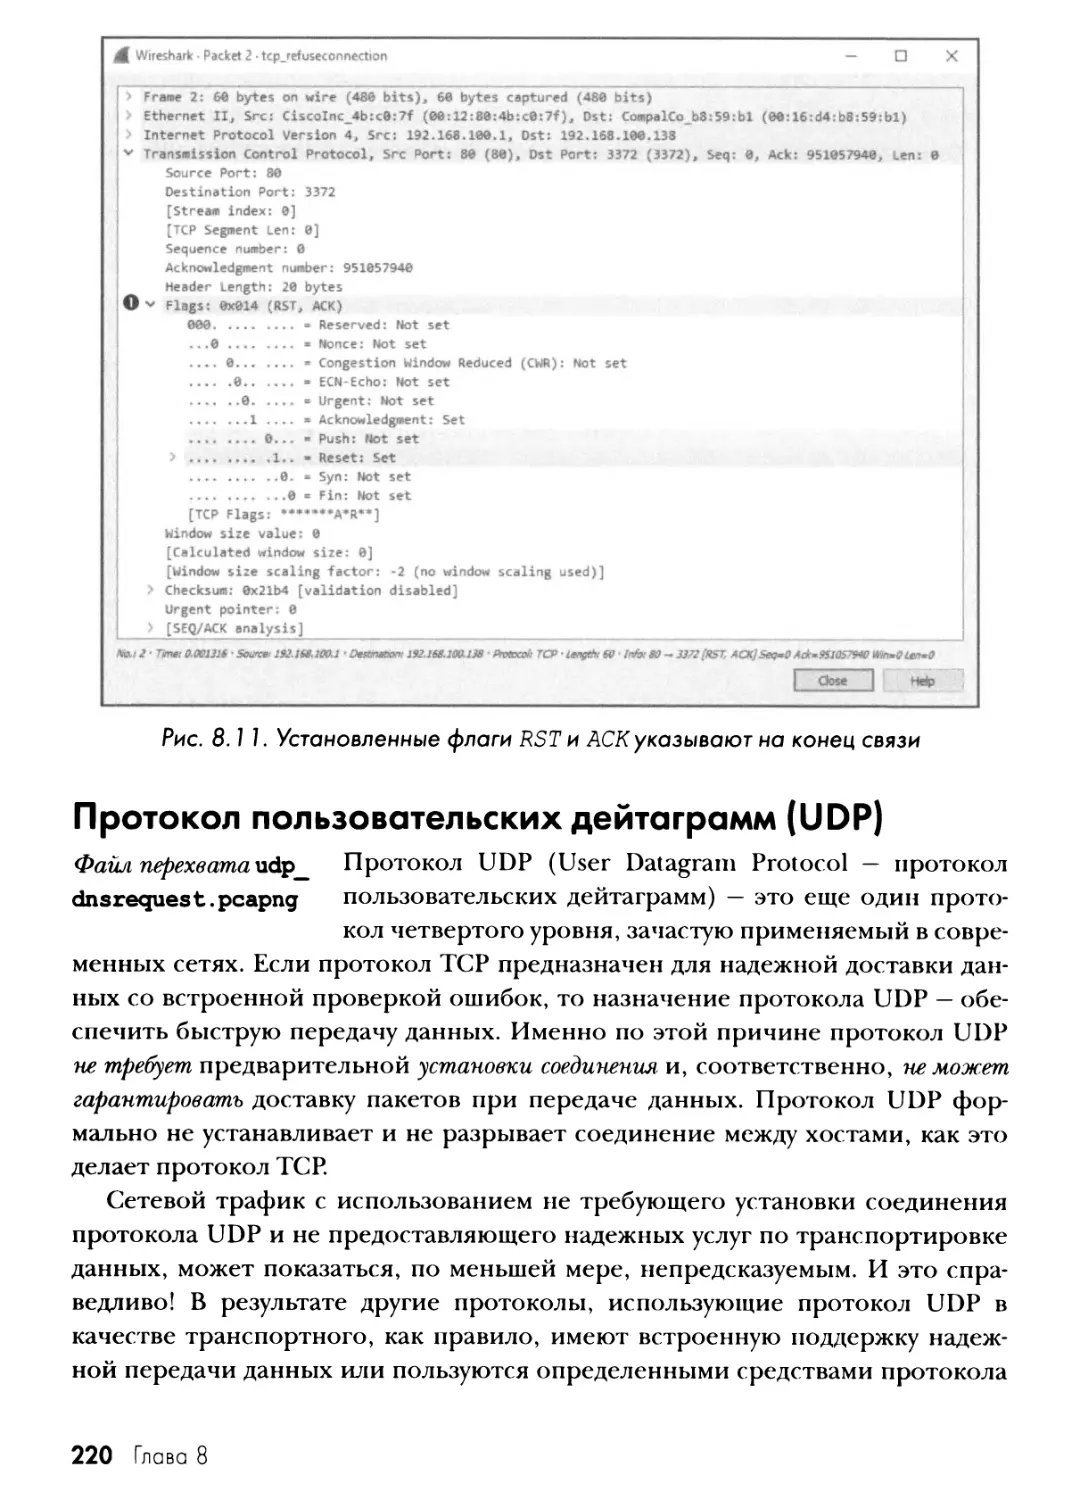 Протокол пользовательских дейтаграмм (UDP)